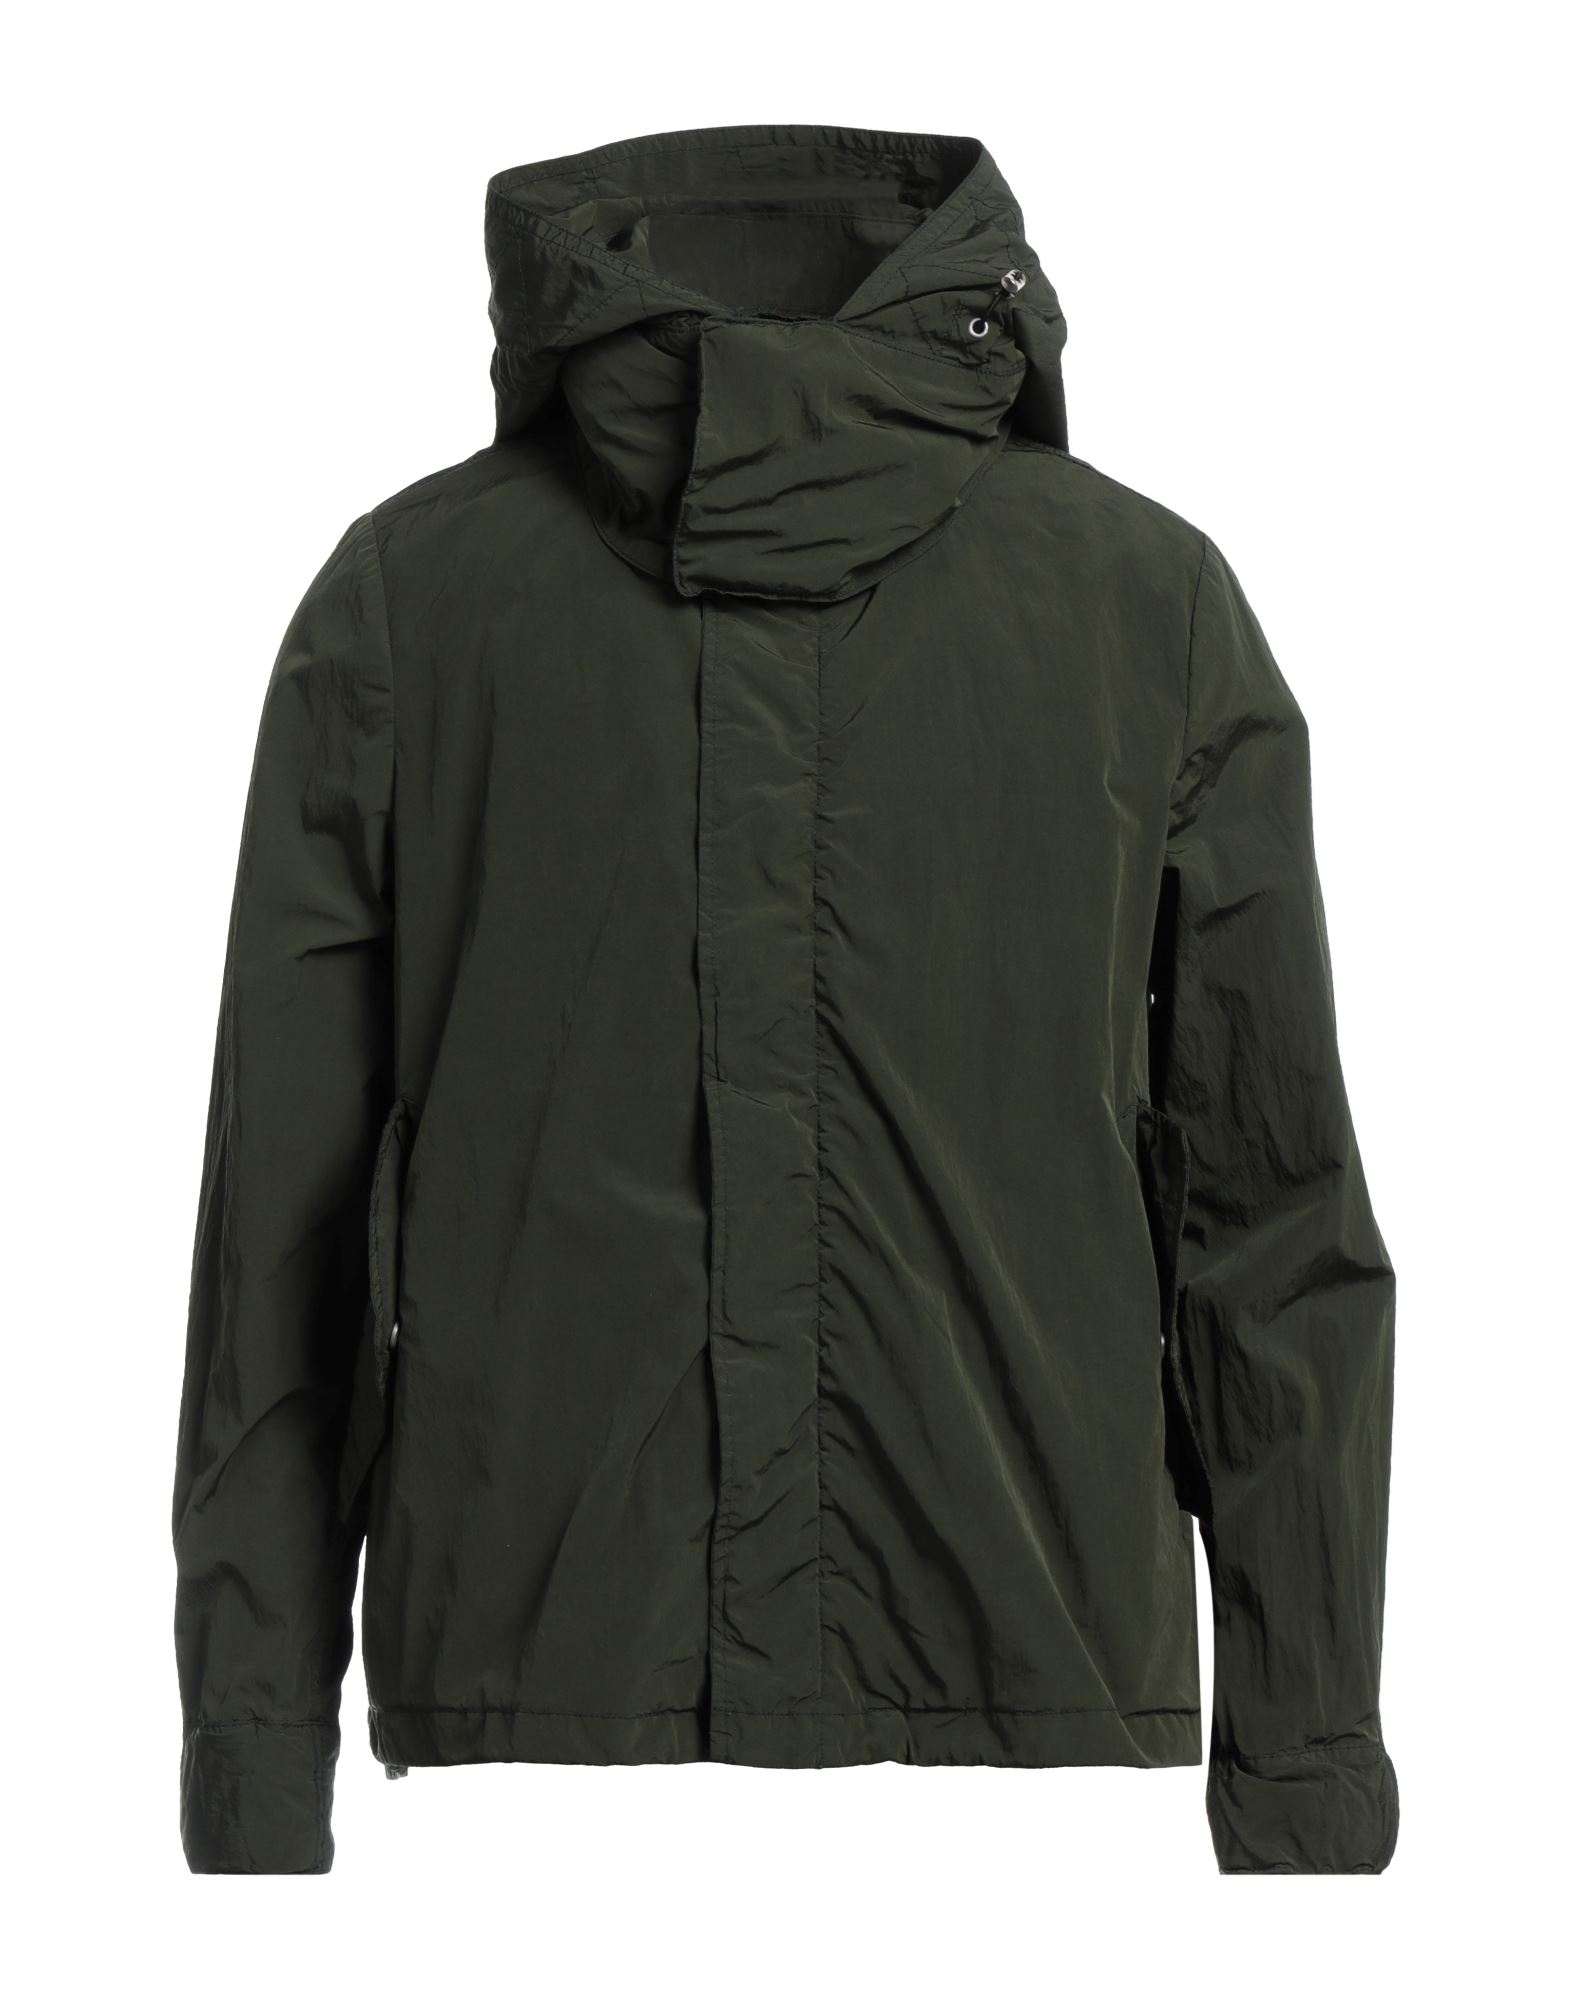 Shop Homeward Clothes Man Jacket Military Green Size Xl Polyester, Nylon